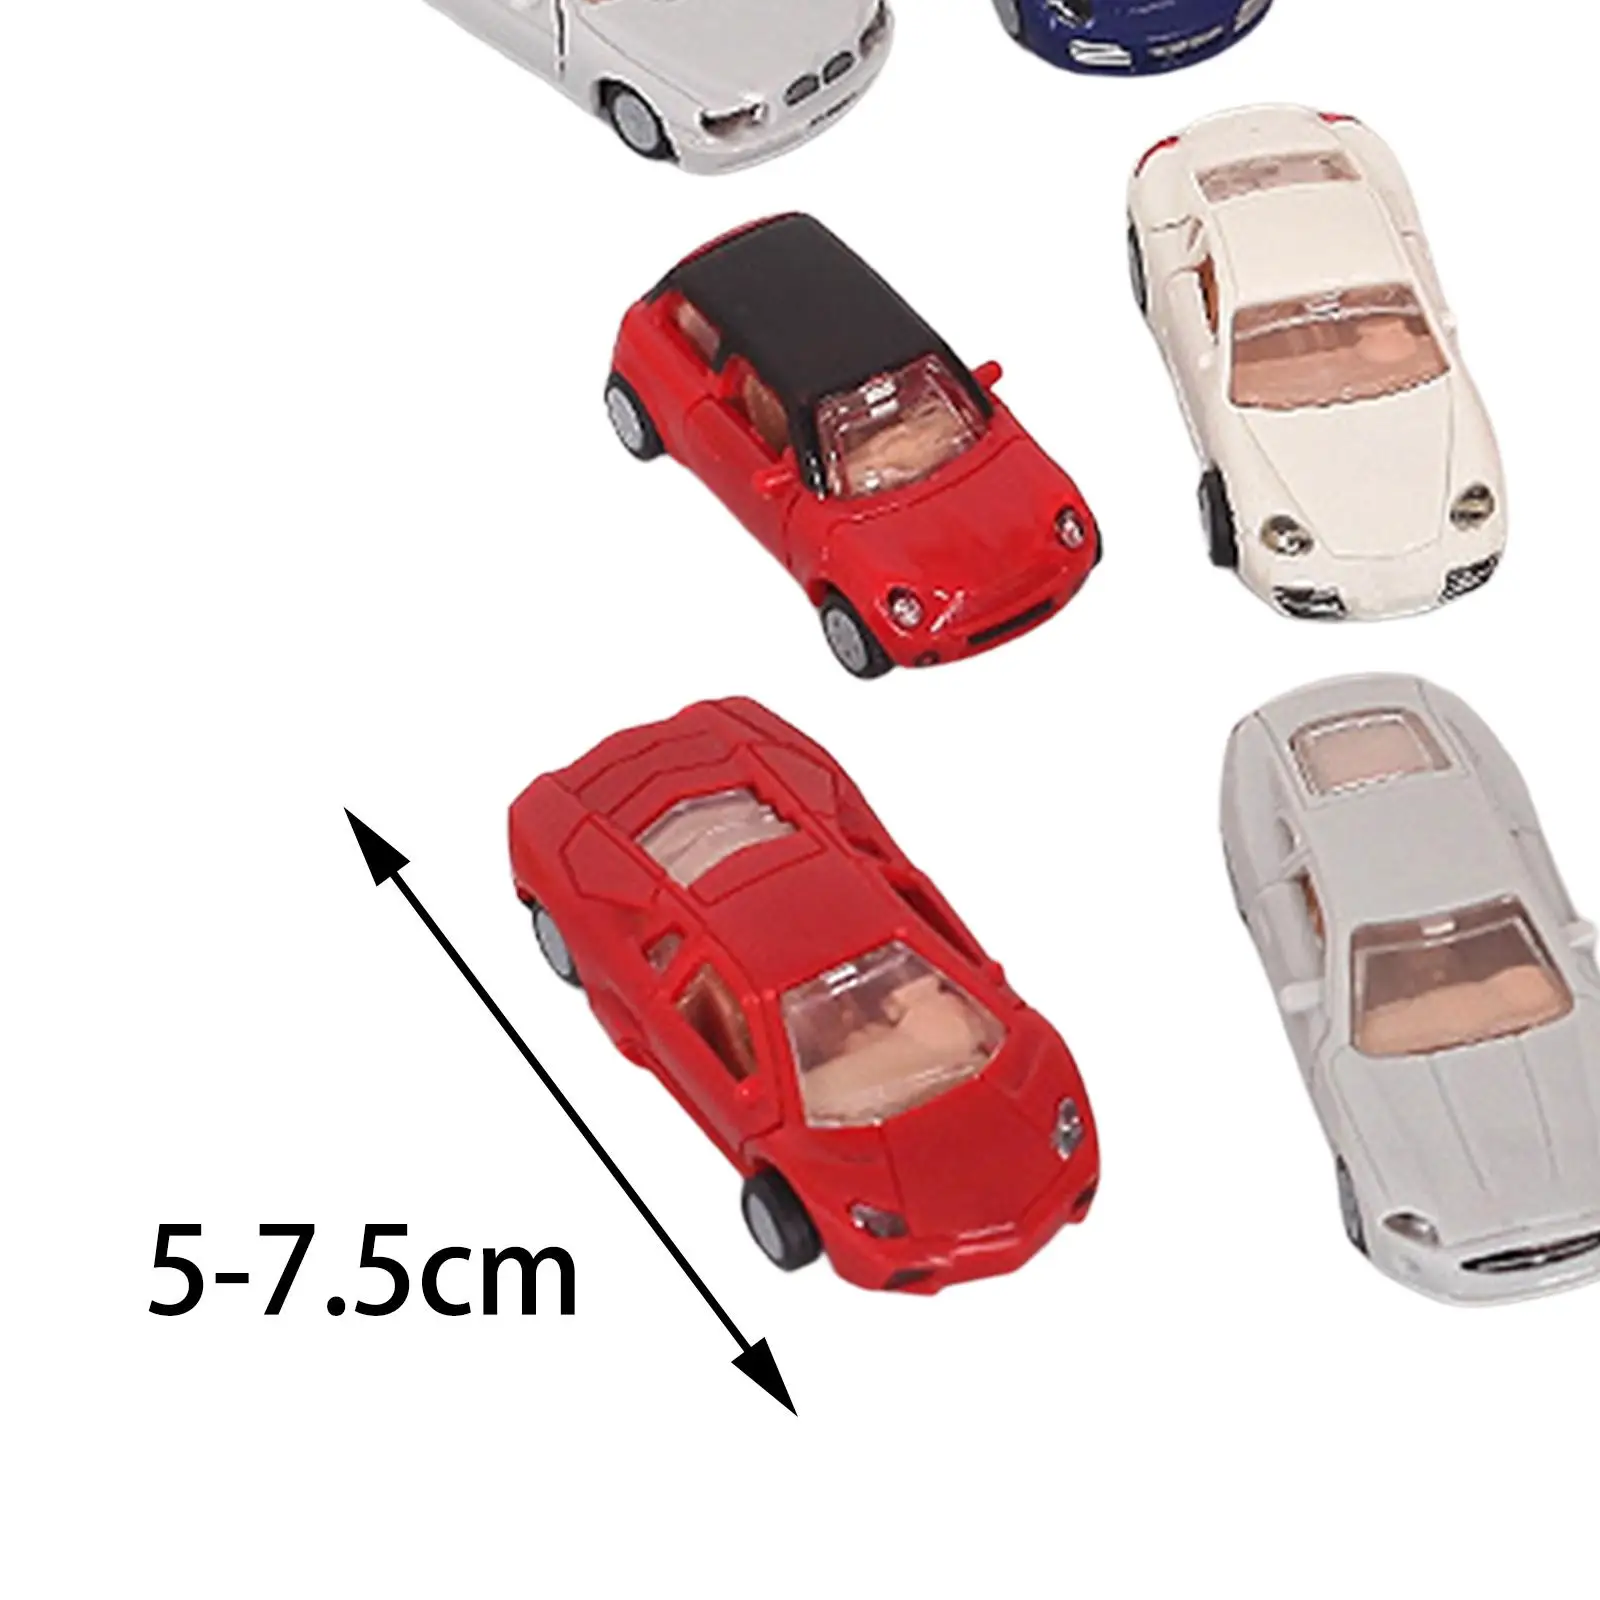 

16 штук 4D набор моделей автомобилей Коллекция игрушек модель всемирно известные модели автомобилей Обучающие игрушечные машины для детей модель здания